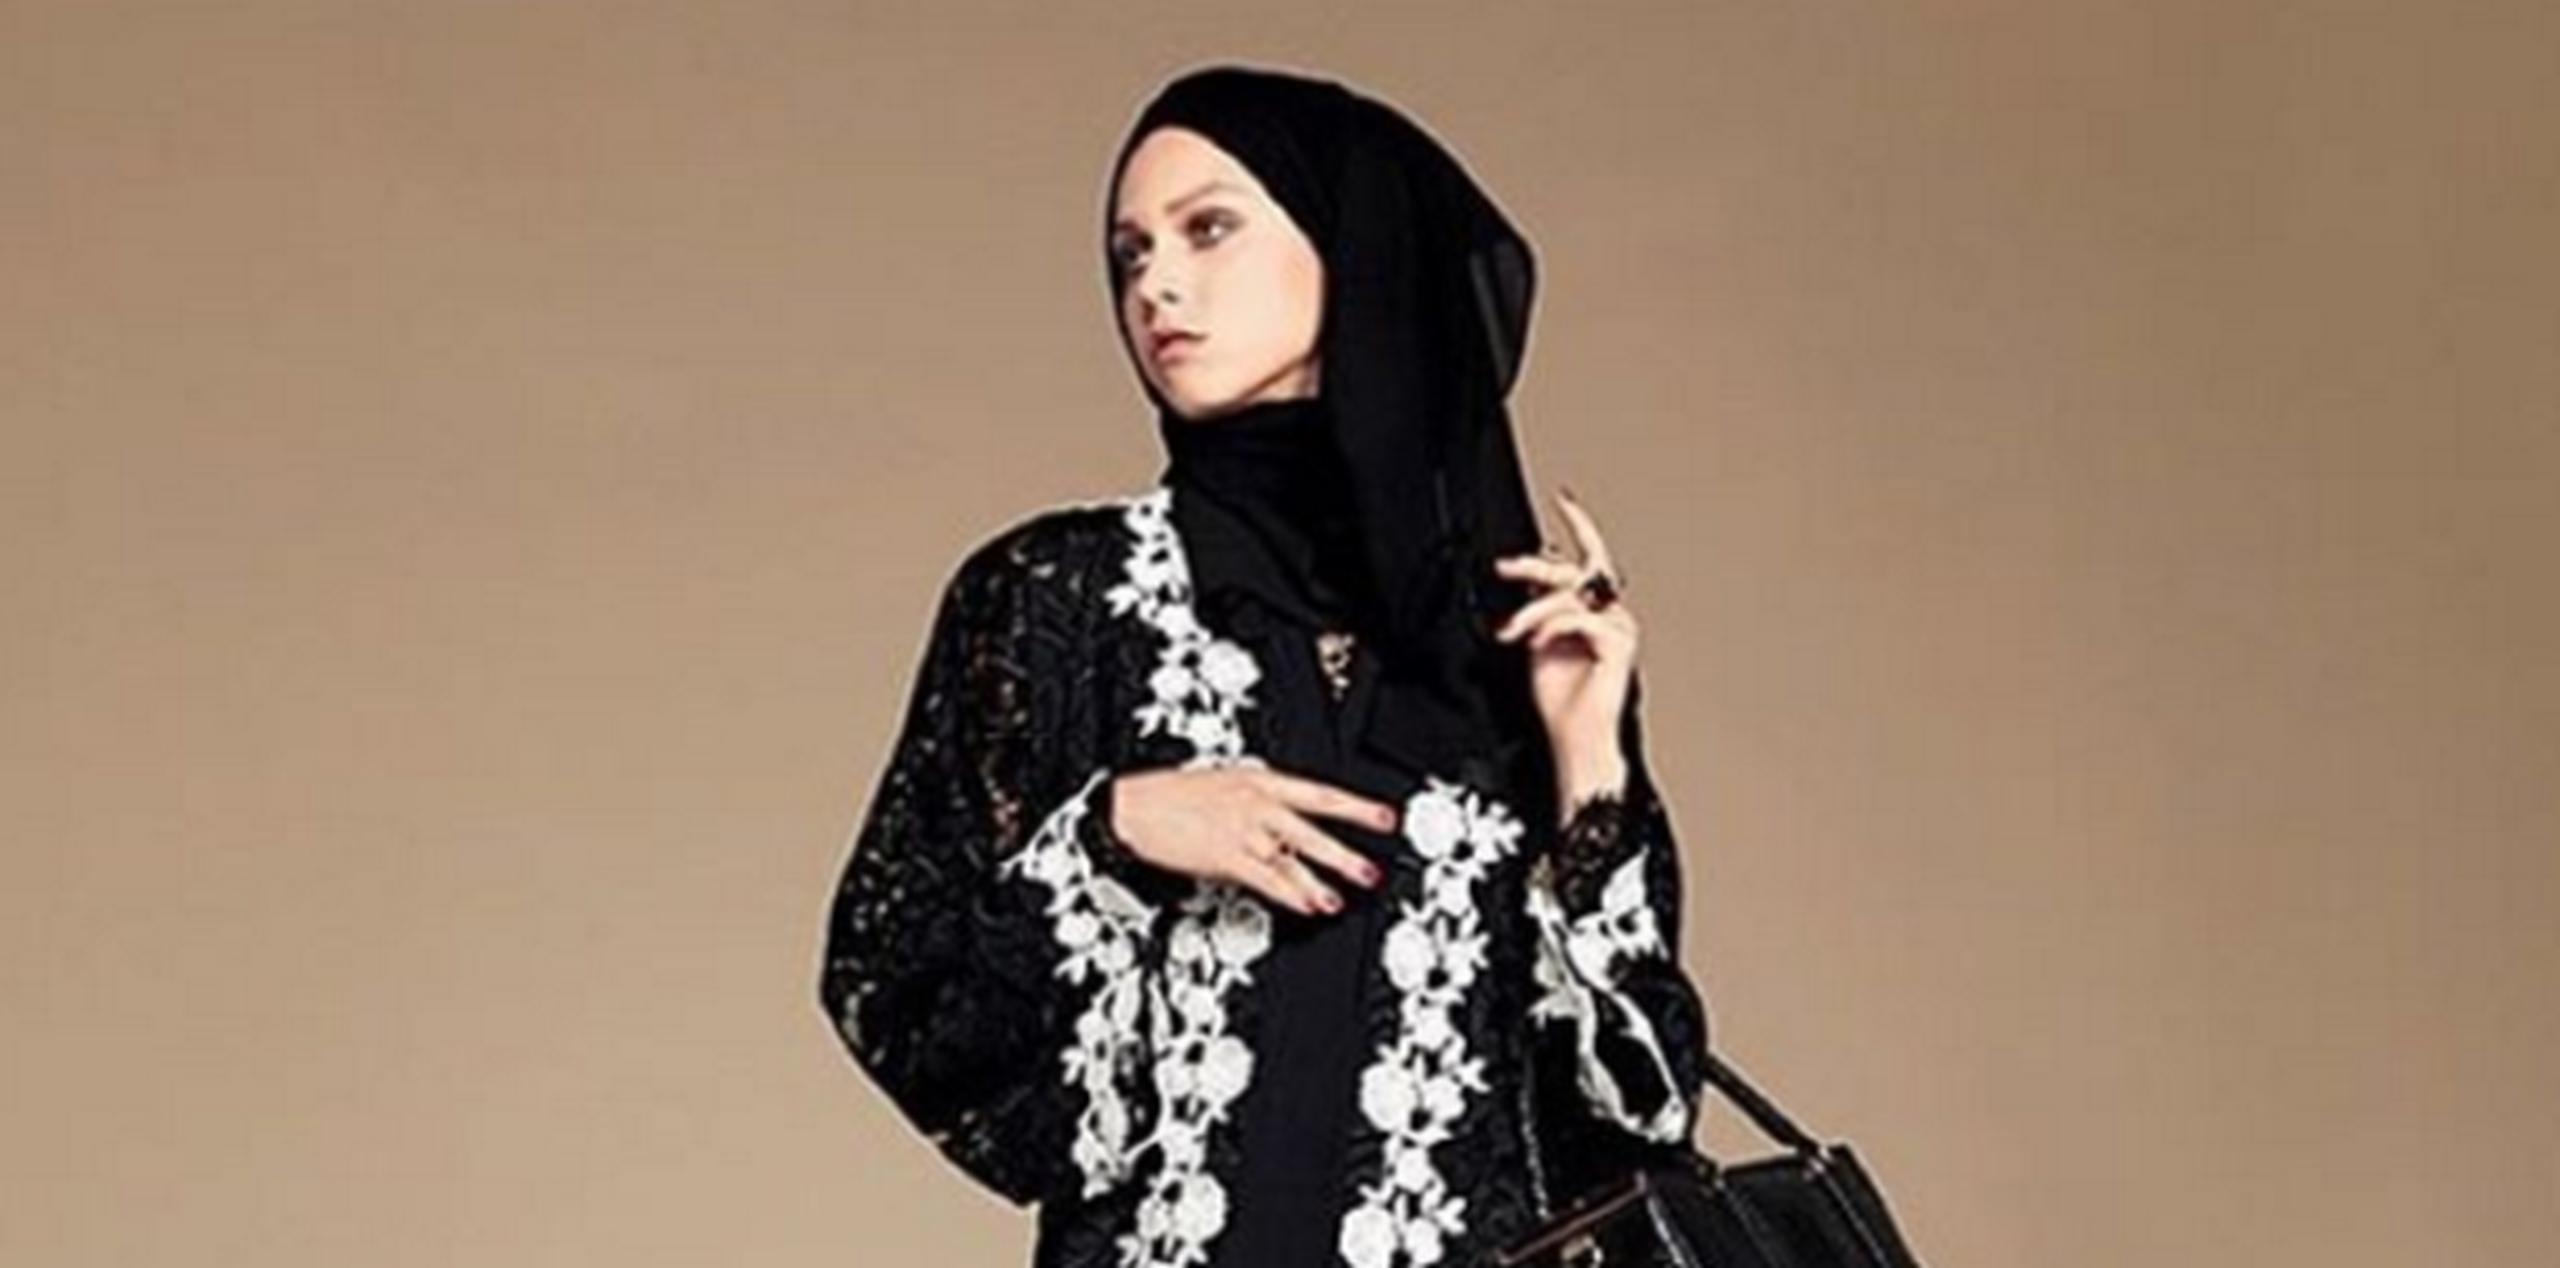 La colección se llama "Abaya". (Instagram)